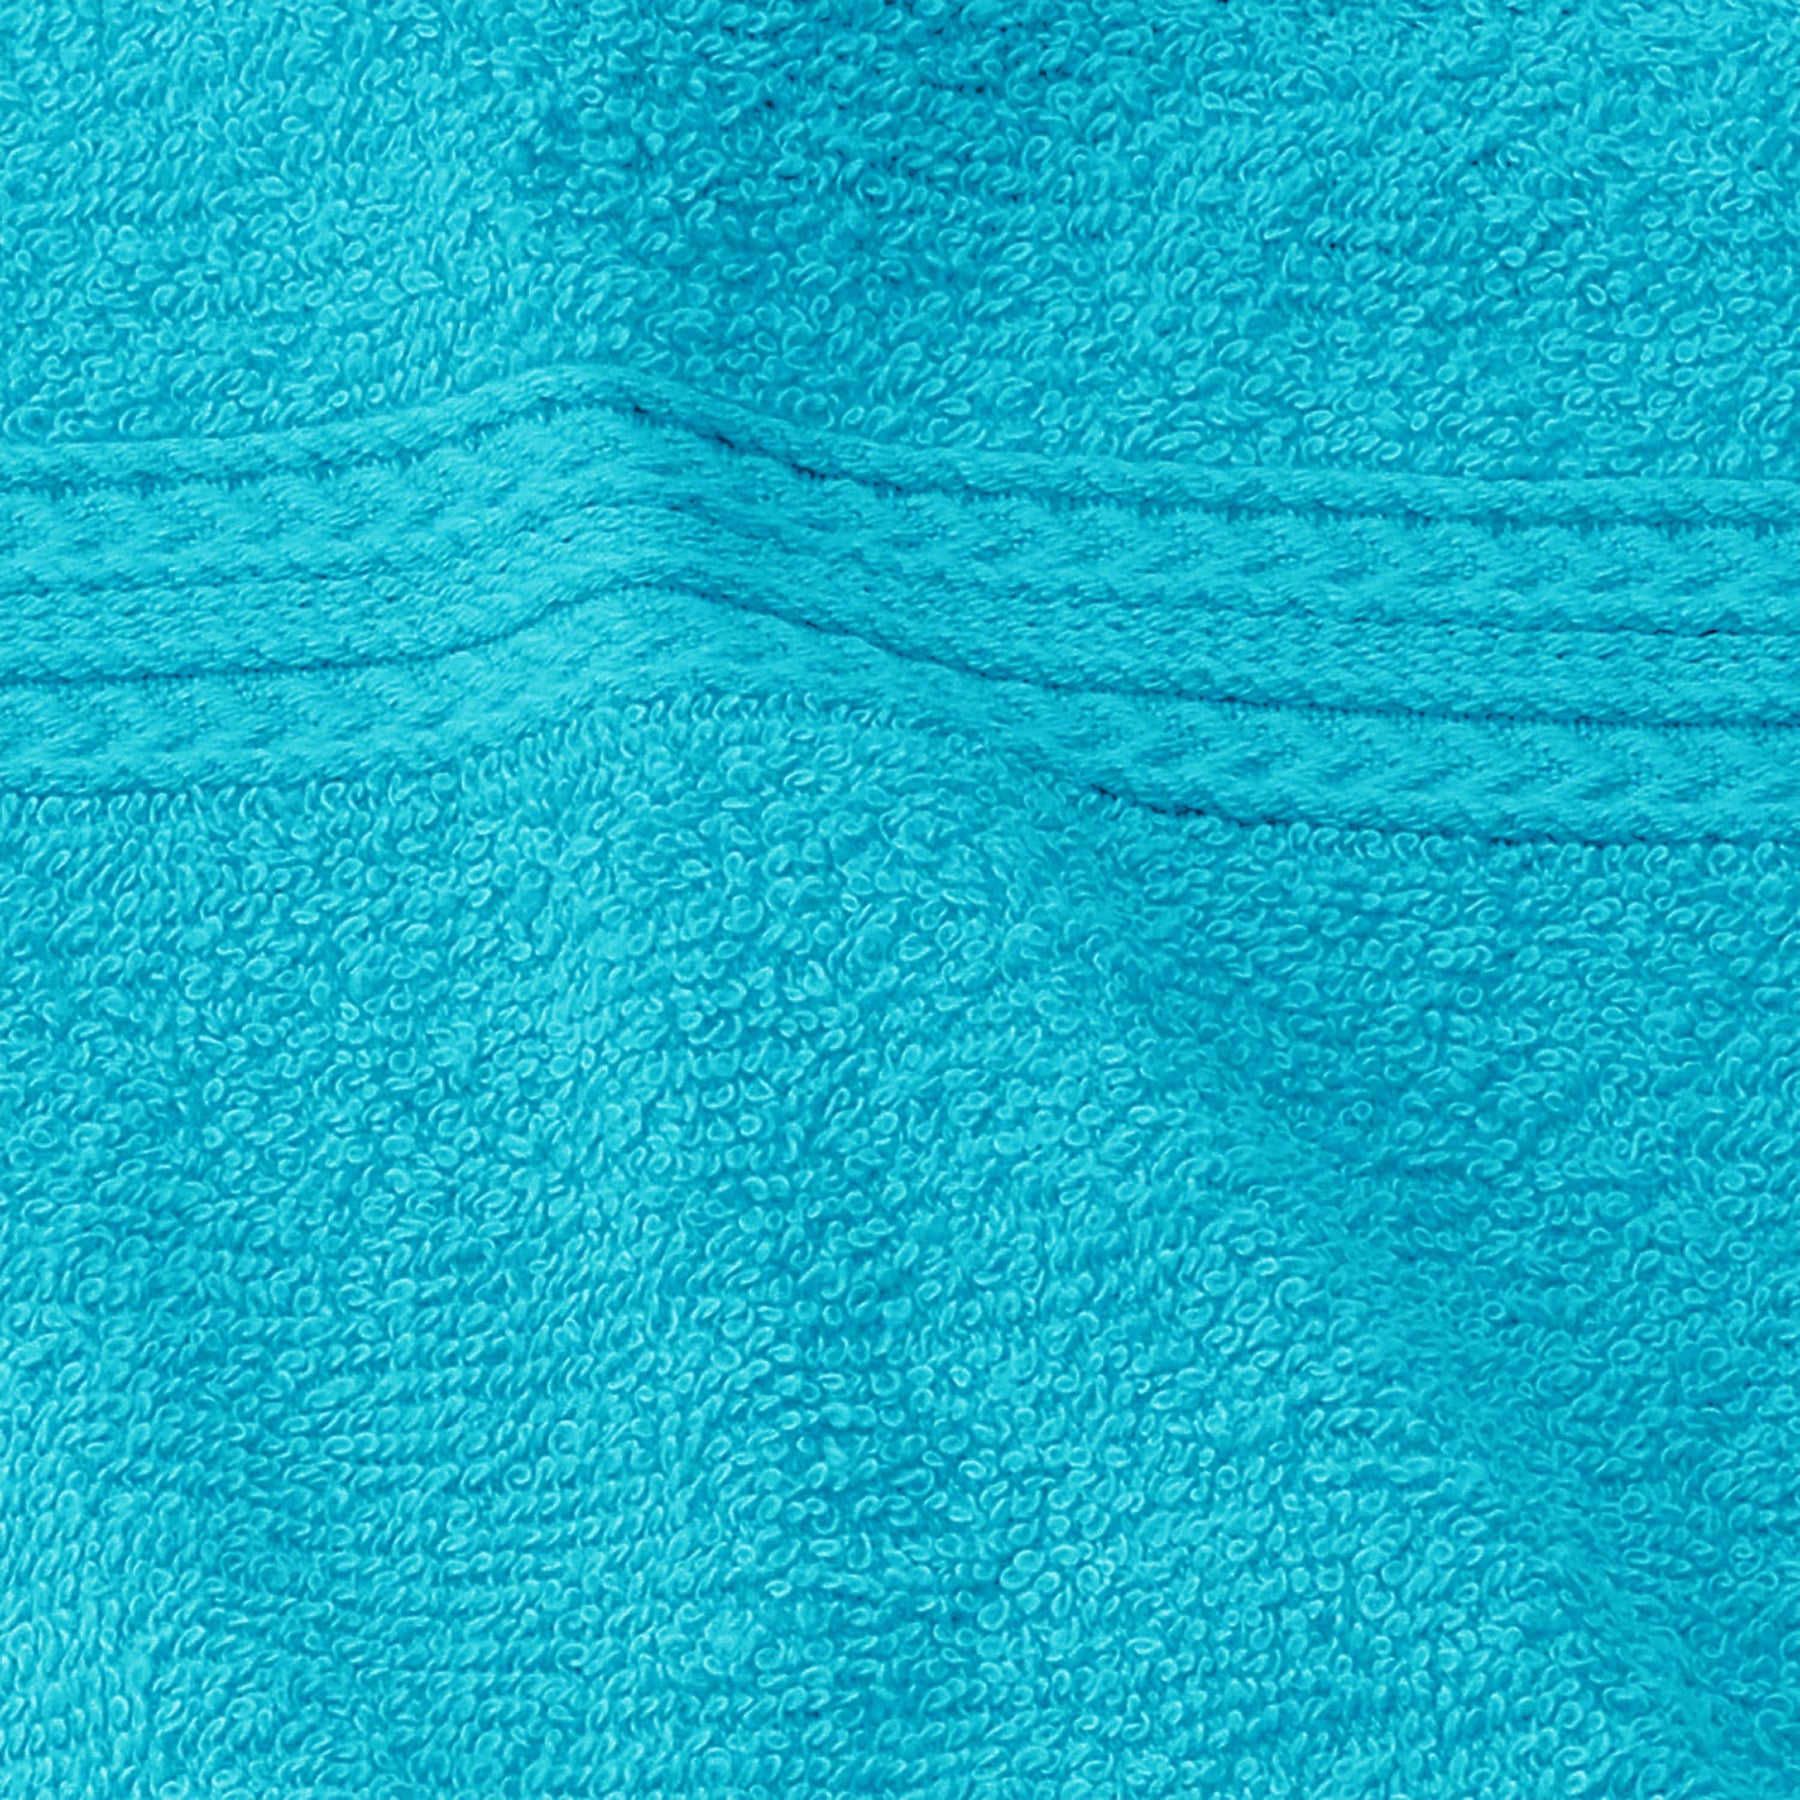 Eco-Friendly Ring Spun Cotton Towel Set - Turquoise